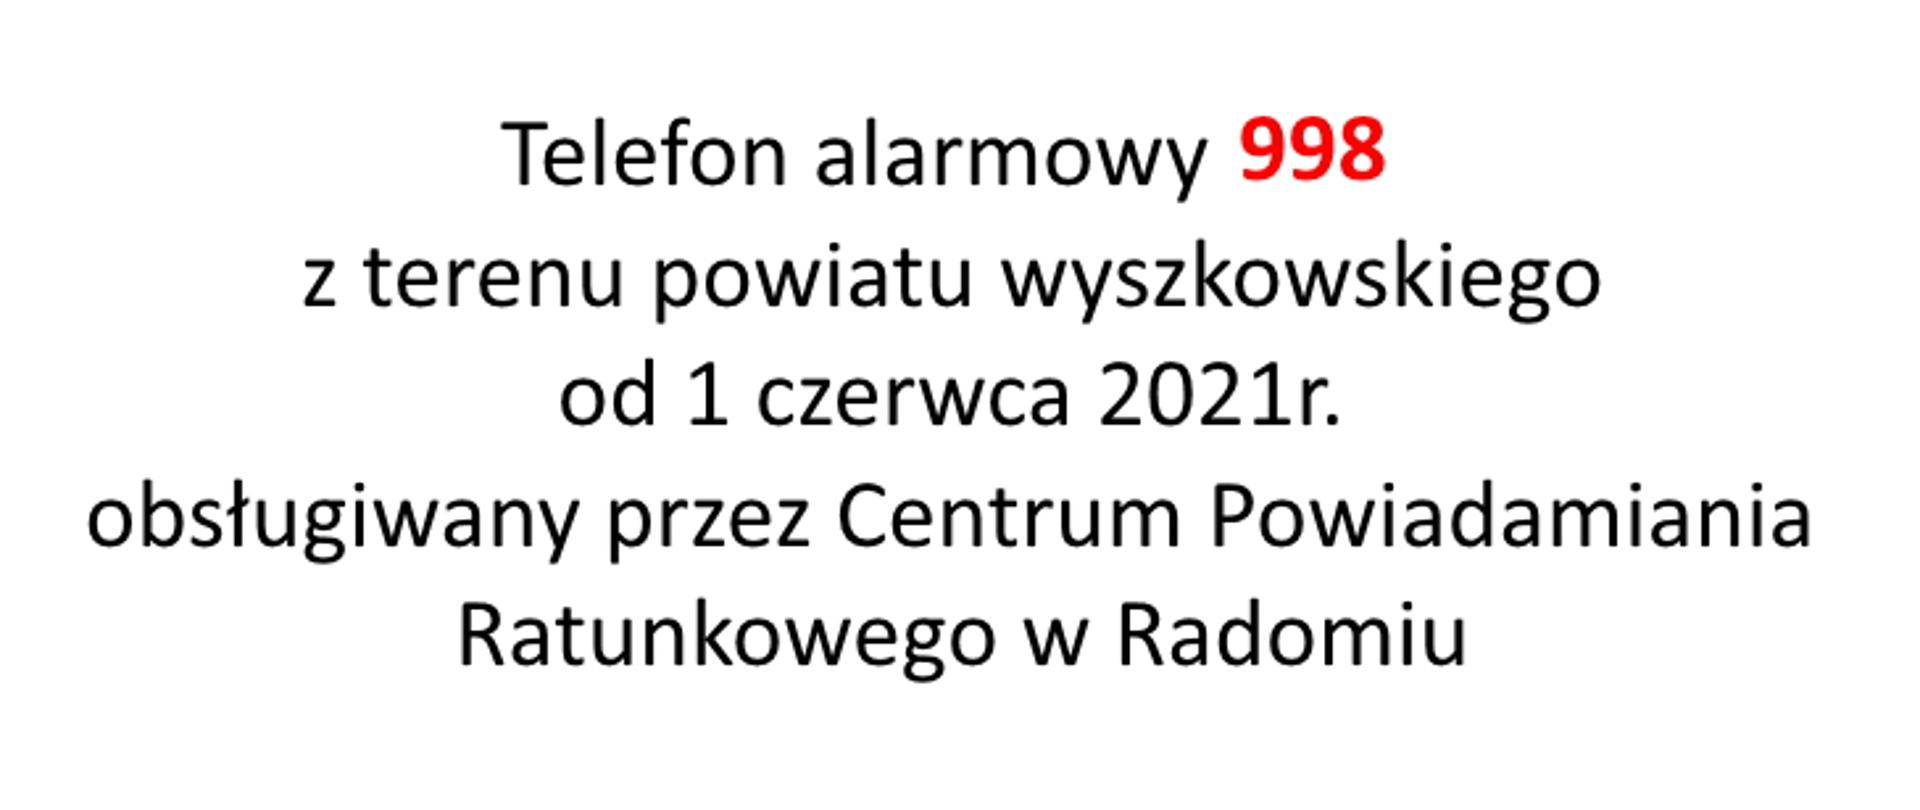 Czarny napis na białym tle: Telefon alarmowy 998 z terenu powiatu wyszkowskiego od 1 czerwca 2021r. obsługiwany przez Centrum Powiadamiania Ratunkowego w Radomiu